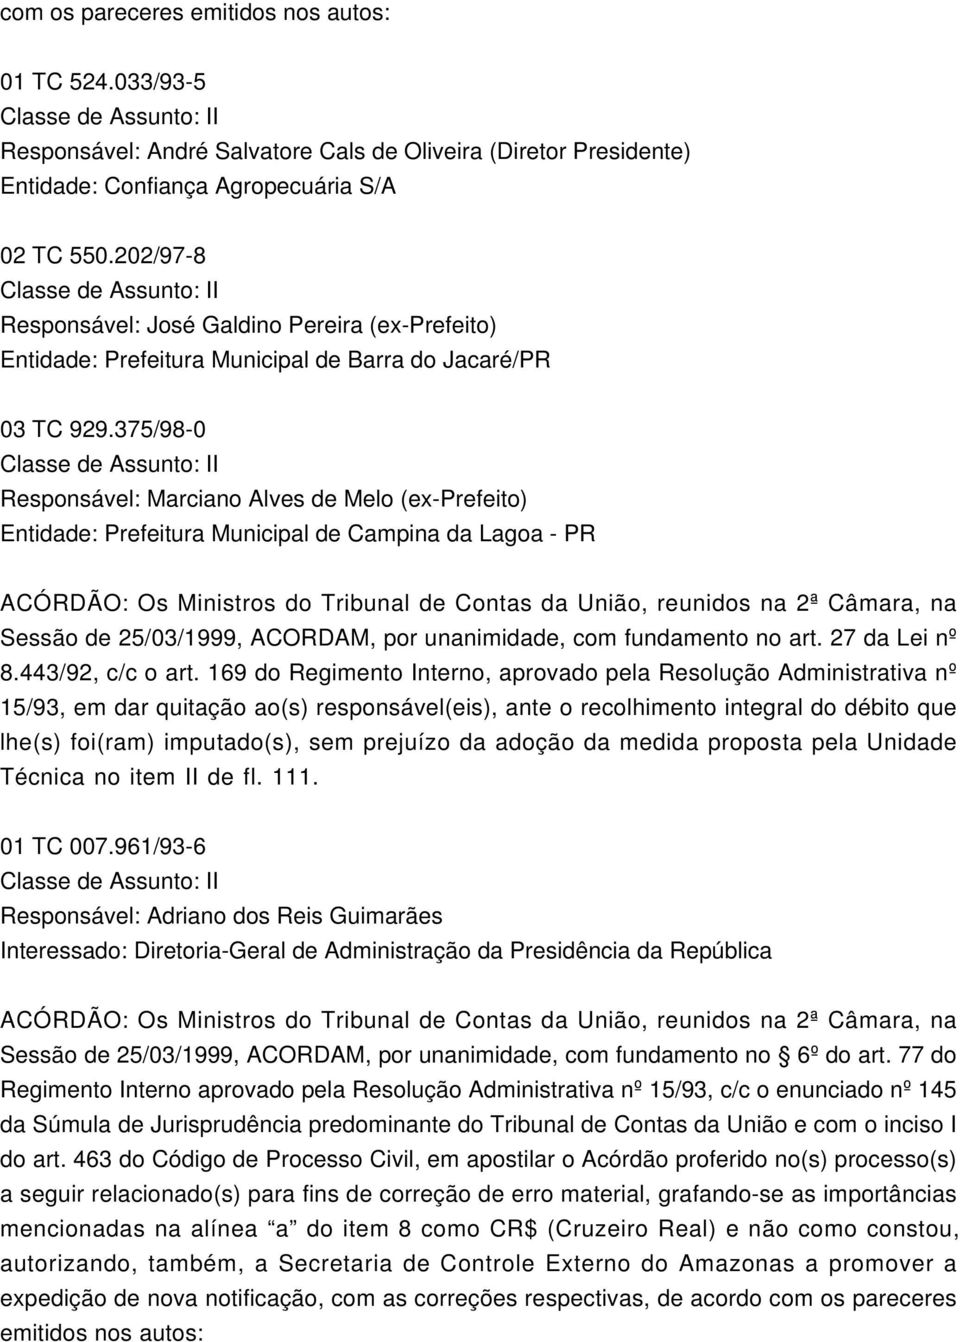 375/98-0 Responsável: Marciano Alves de Melo (ex-prefeito) Entidade: Prefeitura Municipal de Campina da Lagoa - PR Sessão de 25/03/1999, ACORDAM, por unanimidade, com fundamento no art.